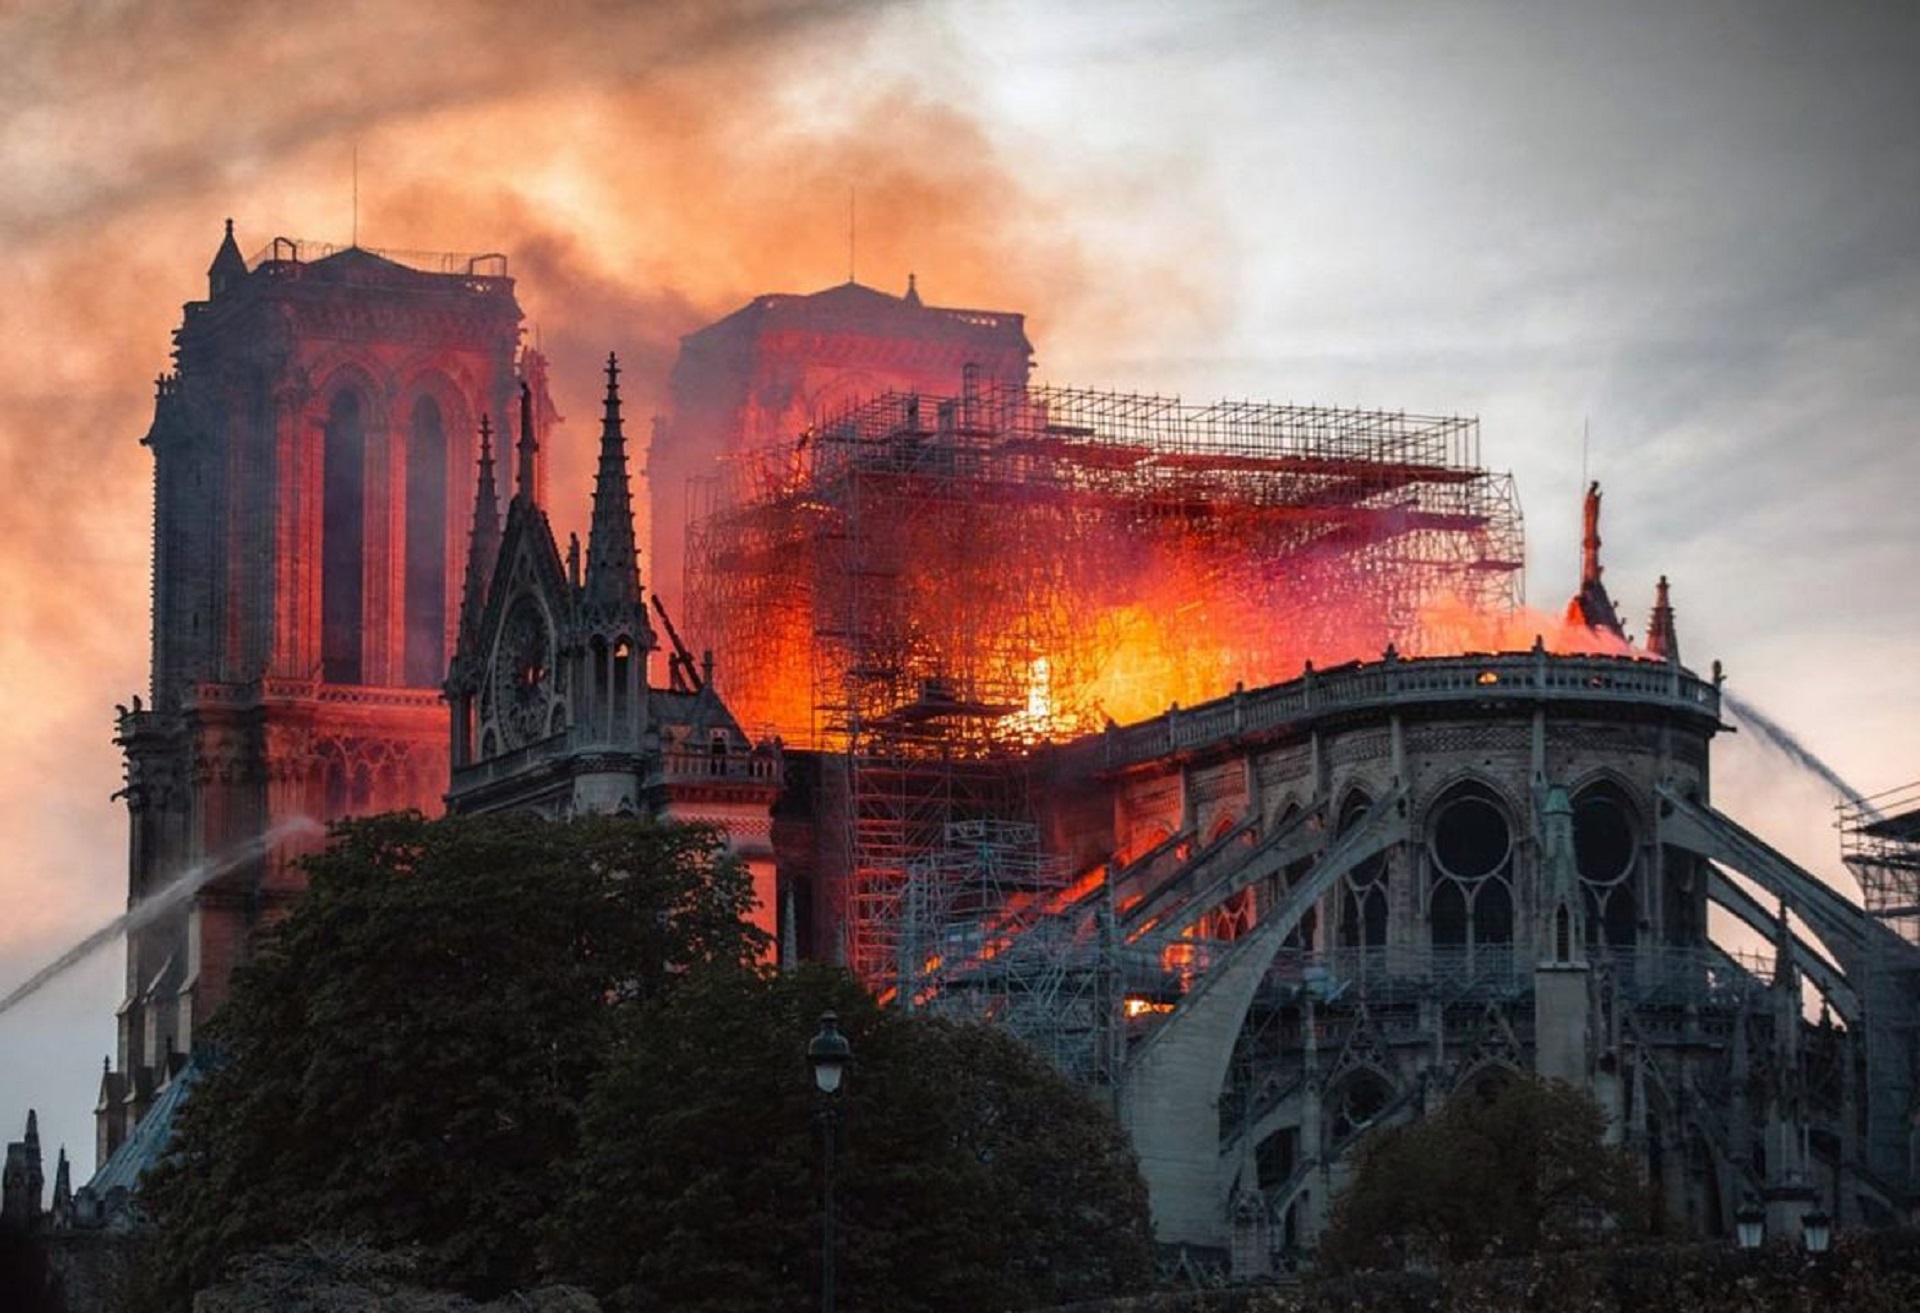 CINEMA: Notre Dame em Chamas